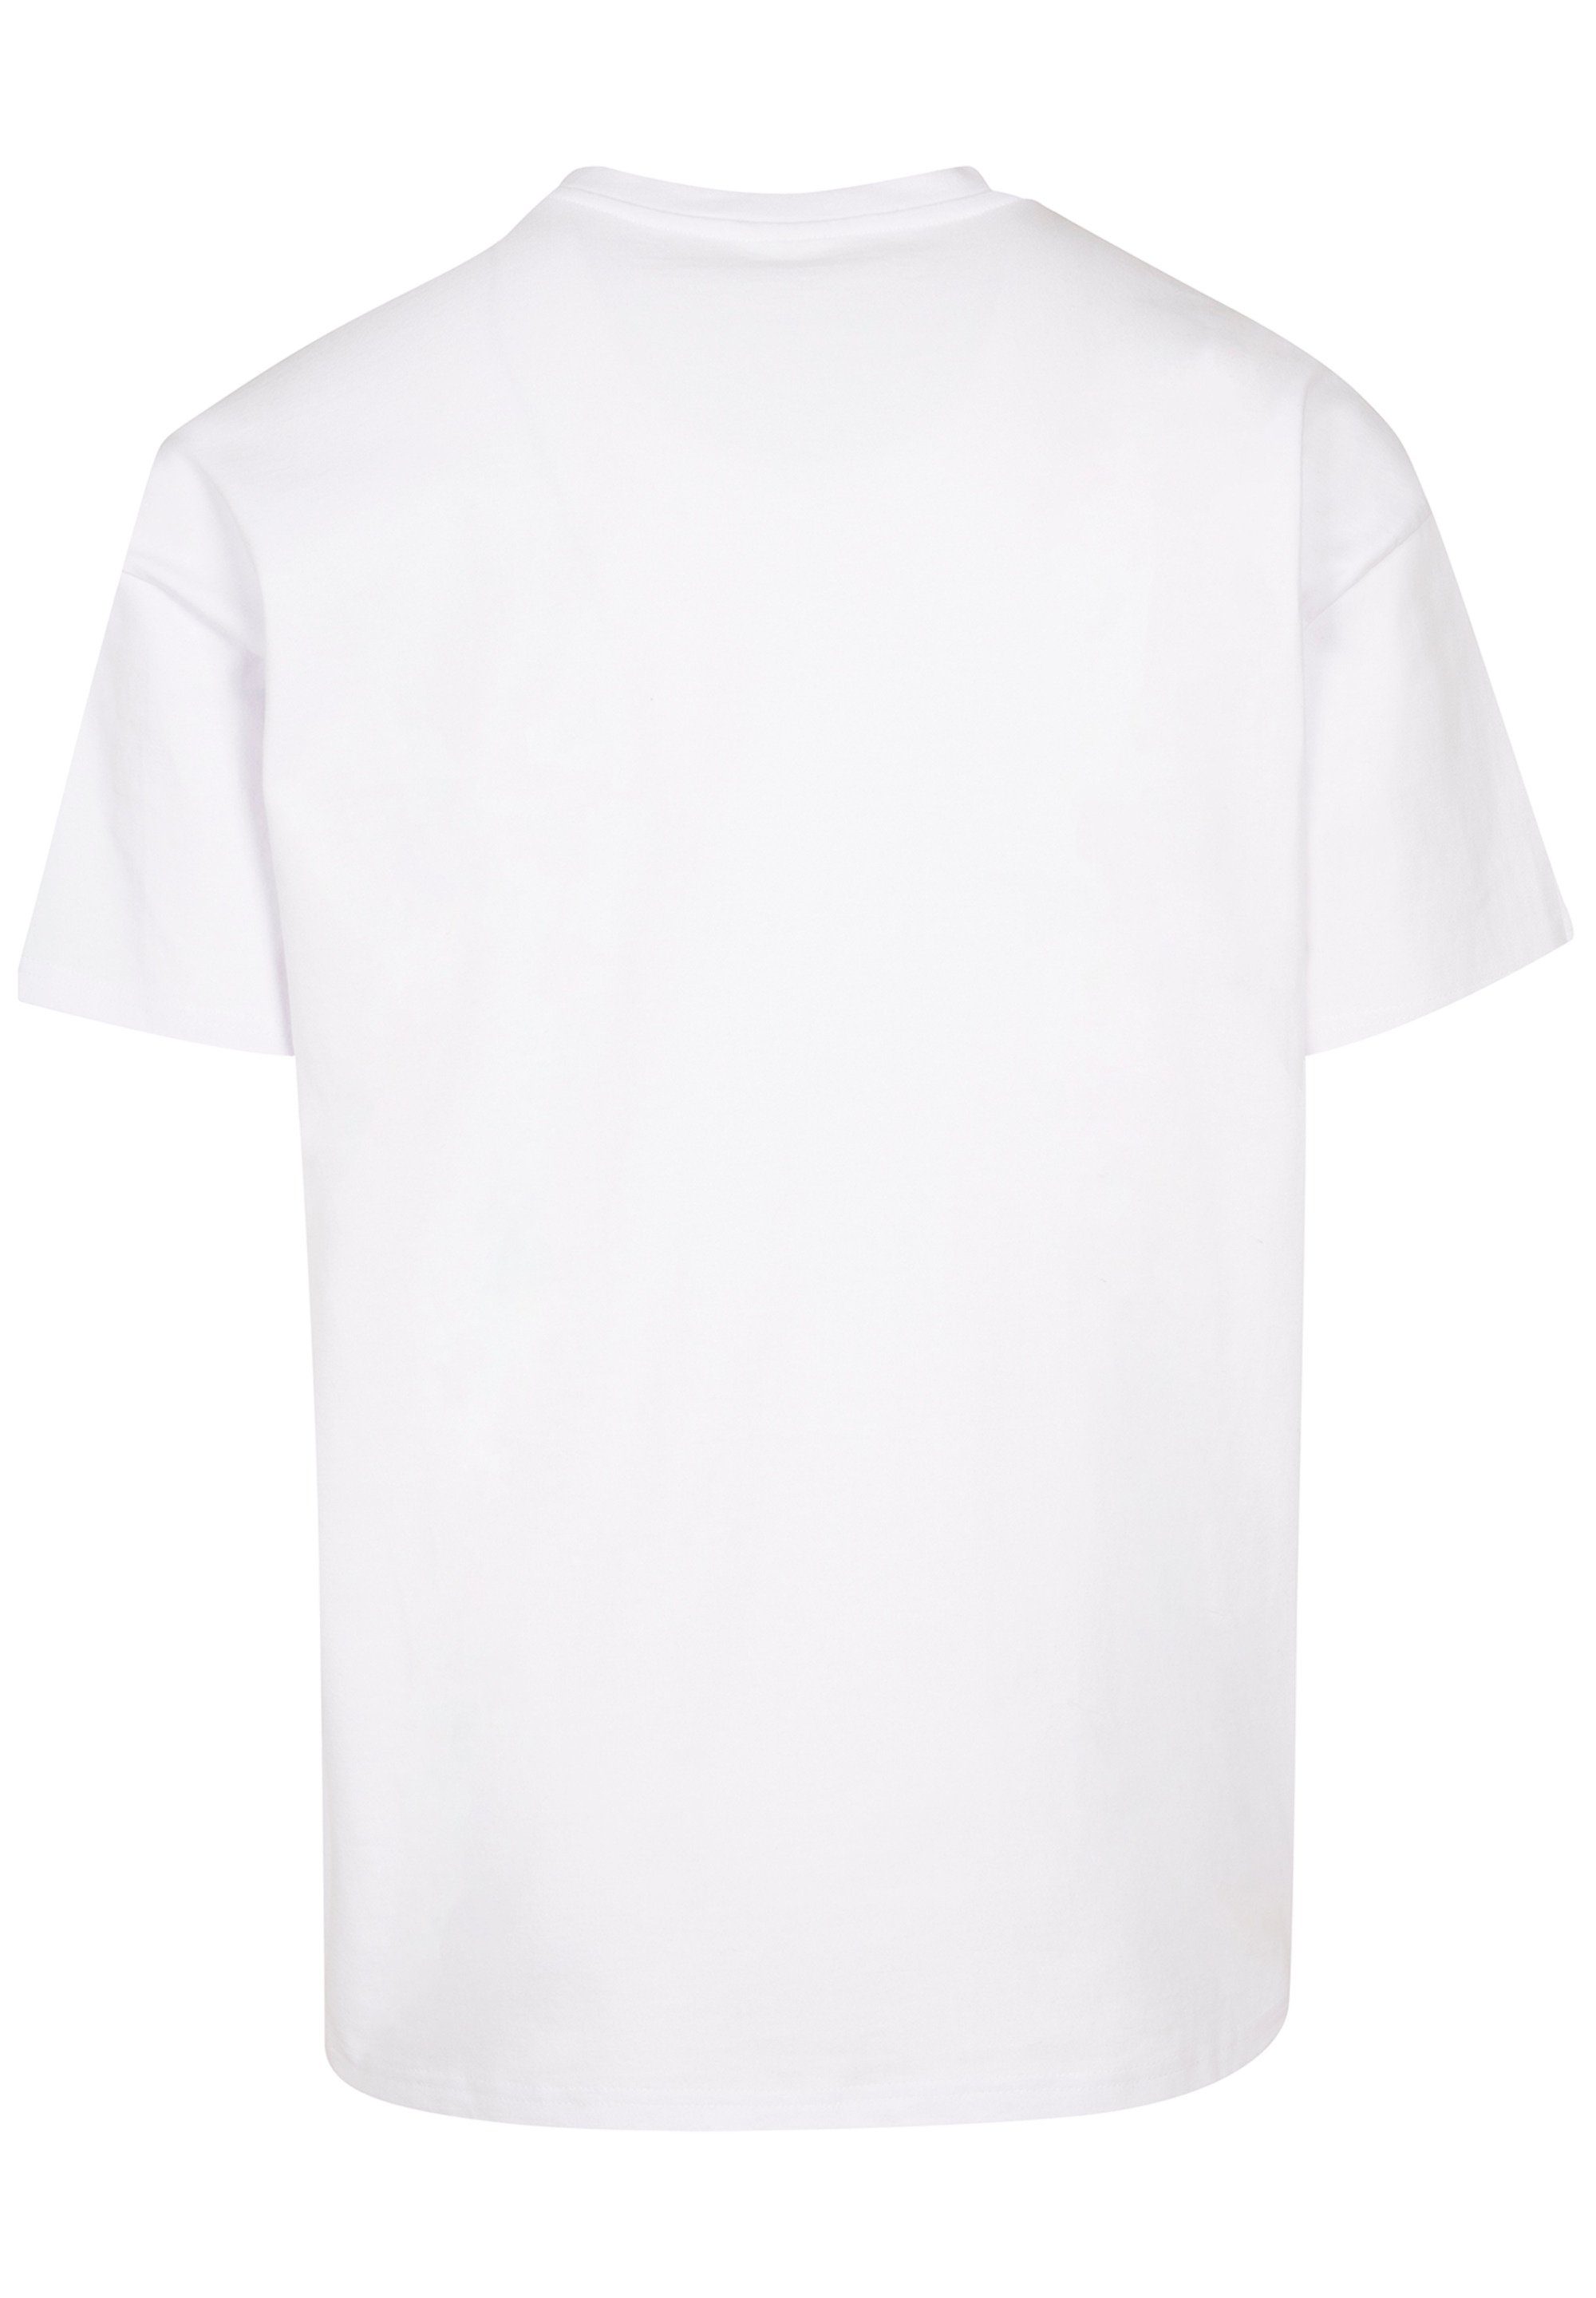 F4NT4STIC T-Shirt Crest Classic Queen Print Rockband Black weiß